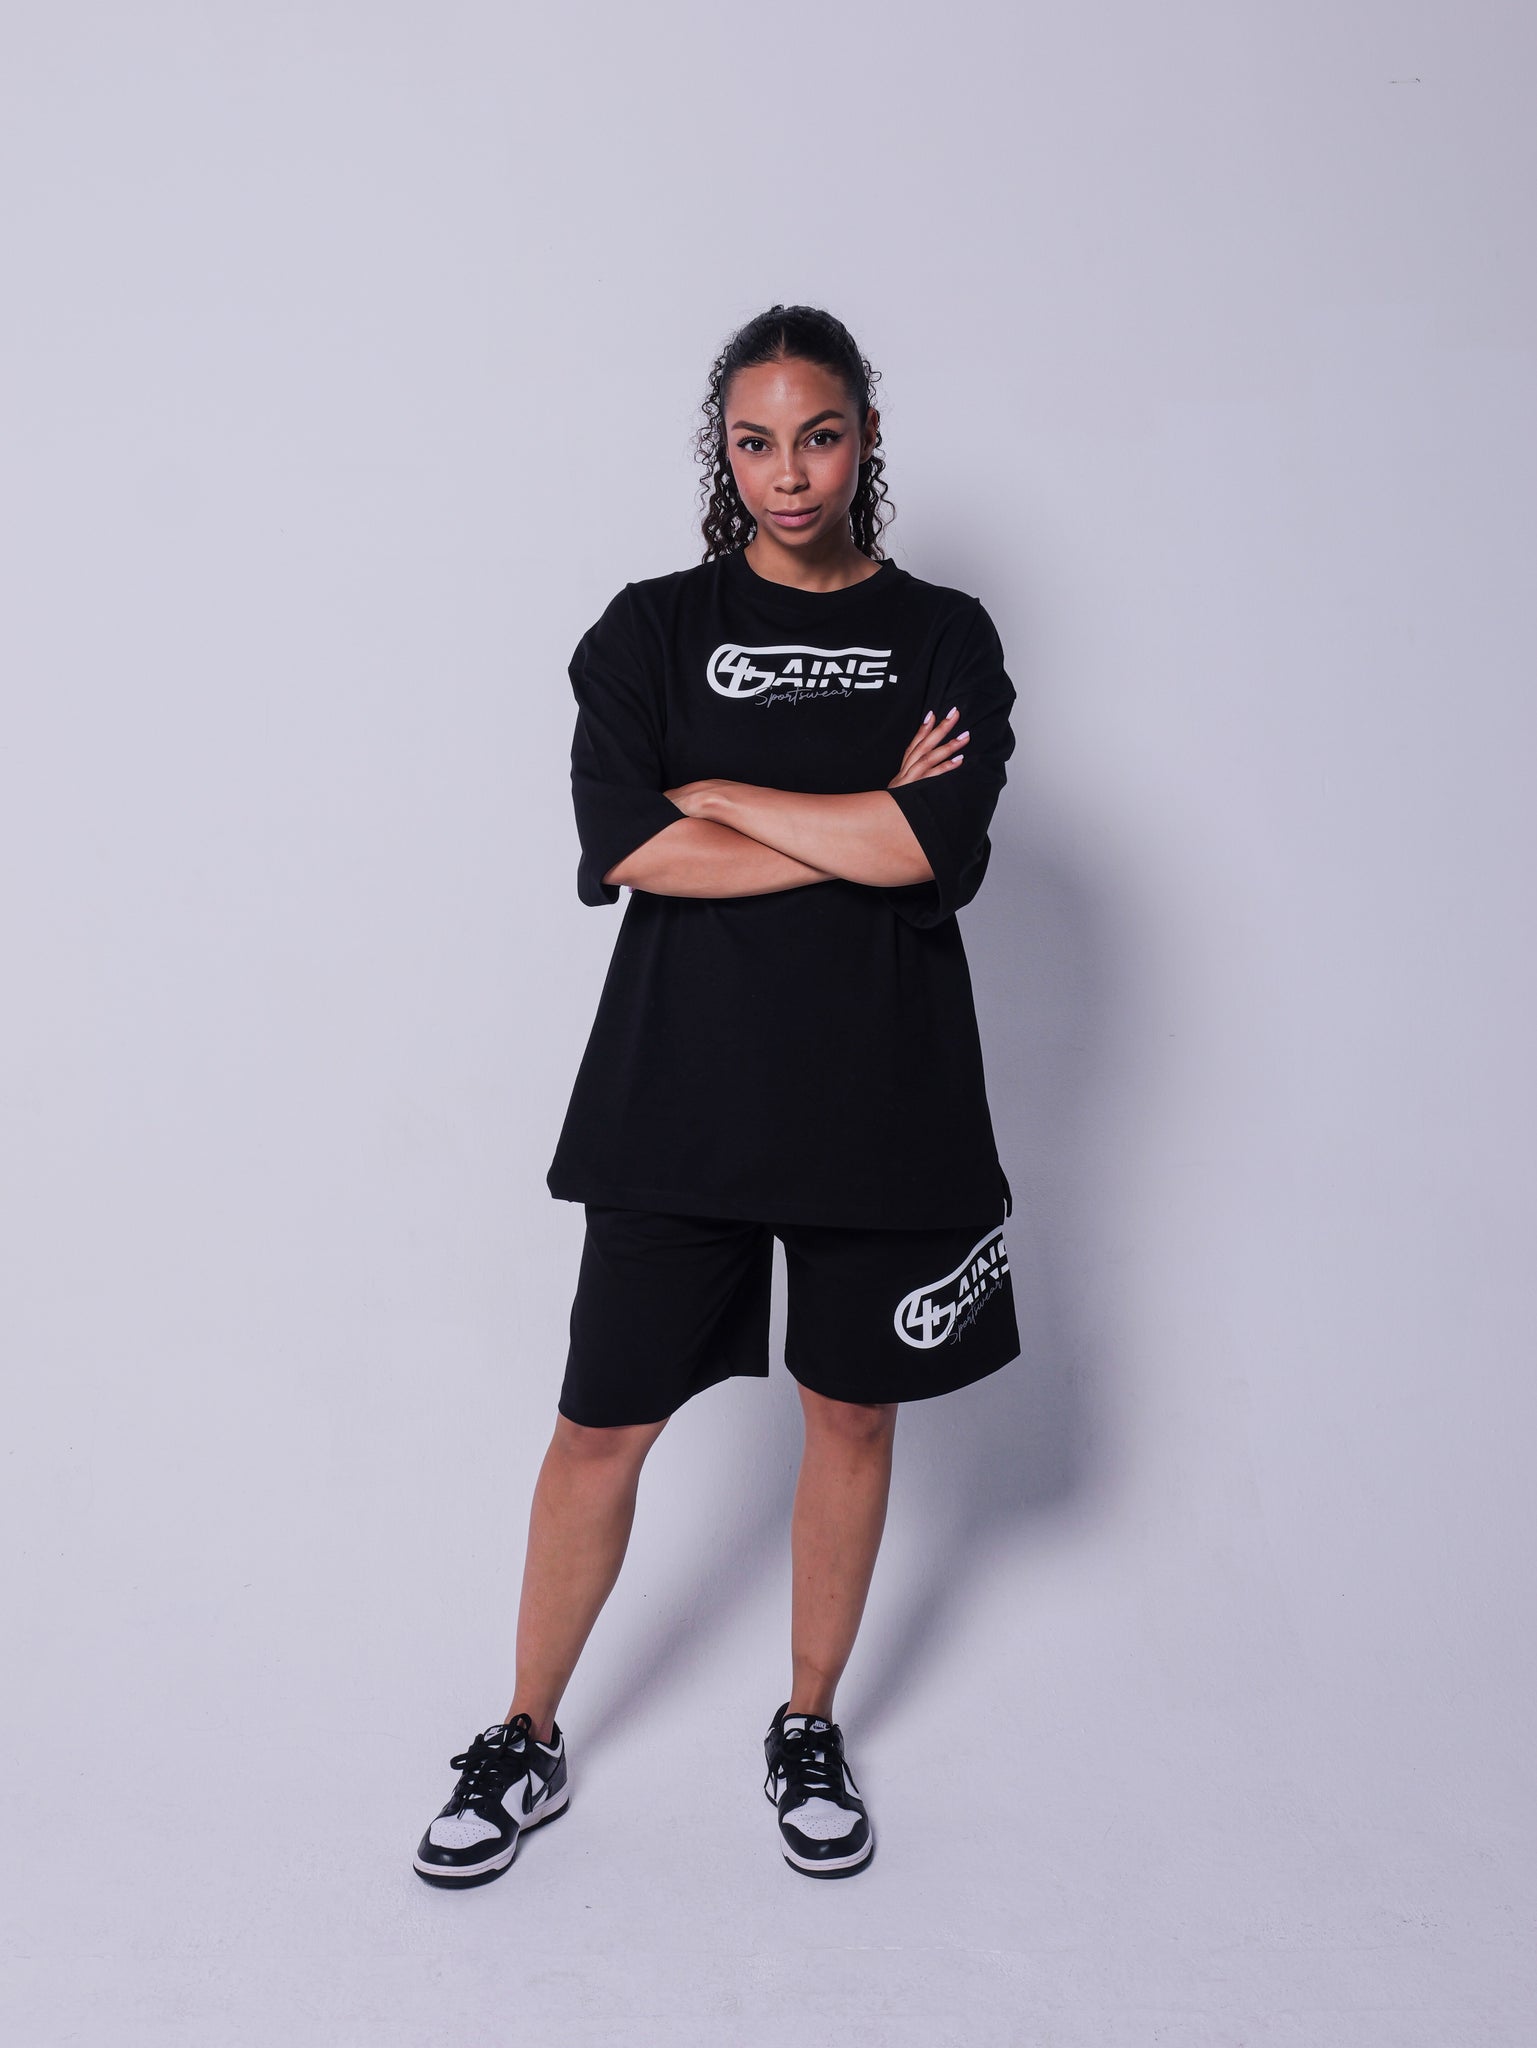 4GAINS Sportswear kurze Hose in der Farbe schwarz mit weißem Aufdruck an einem weiblichen stehenden Model 